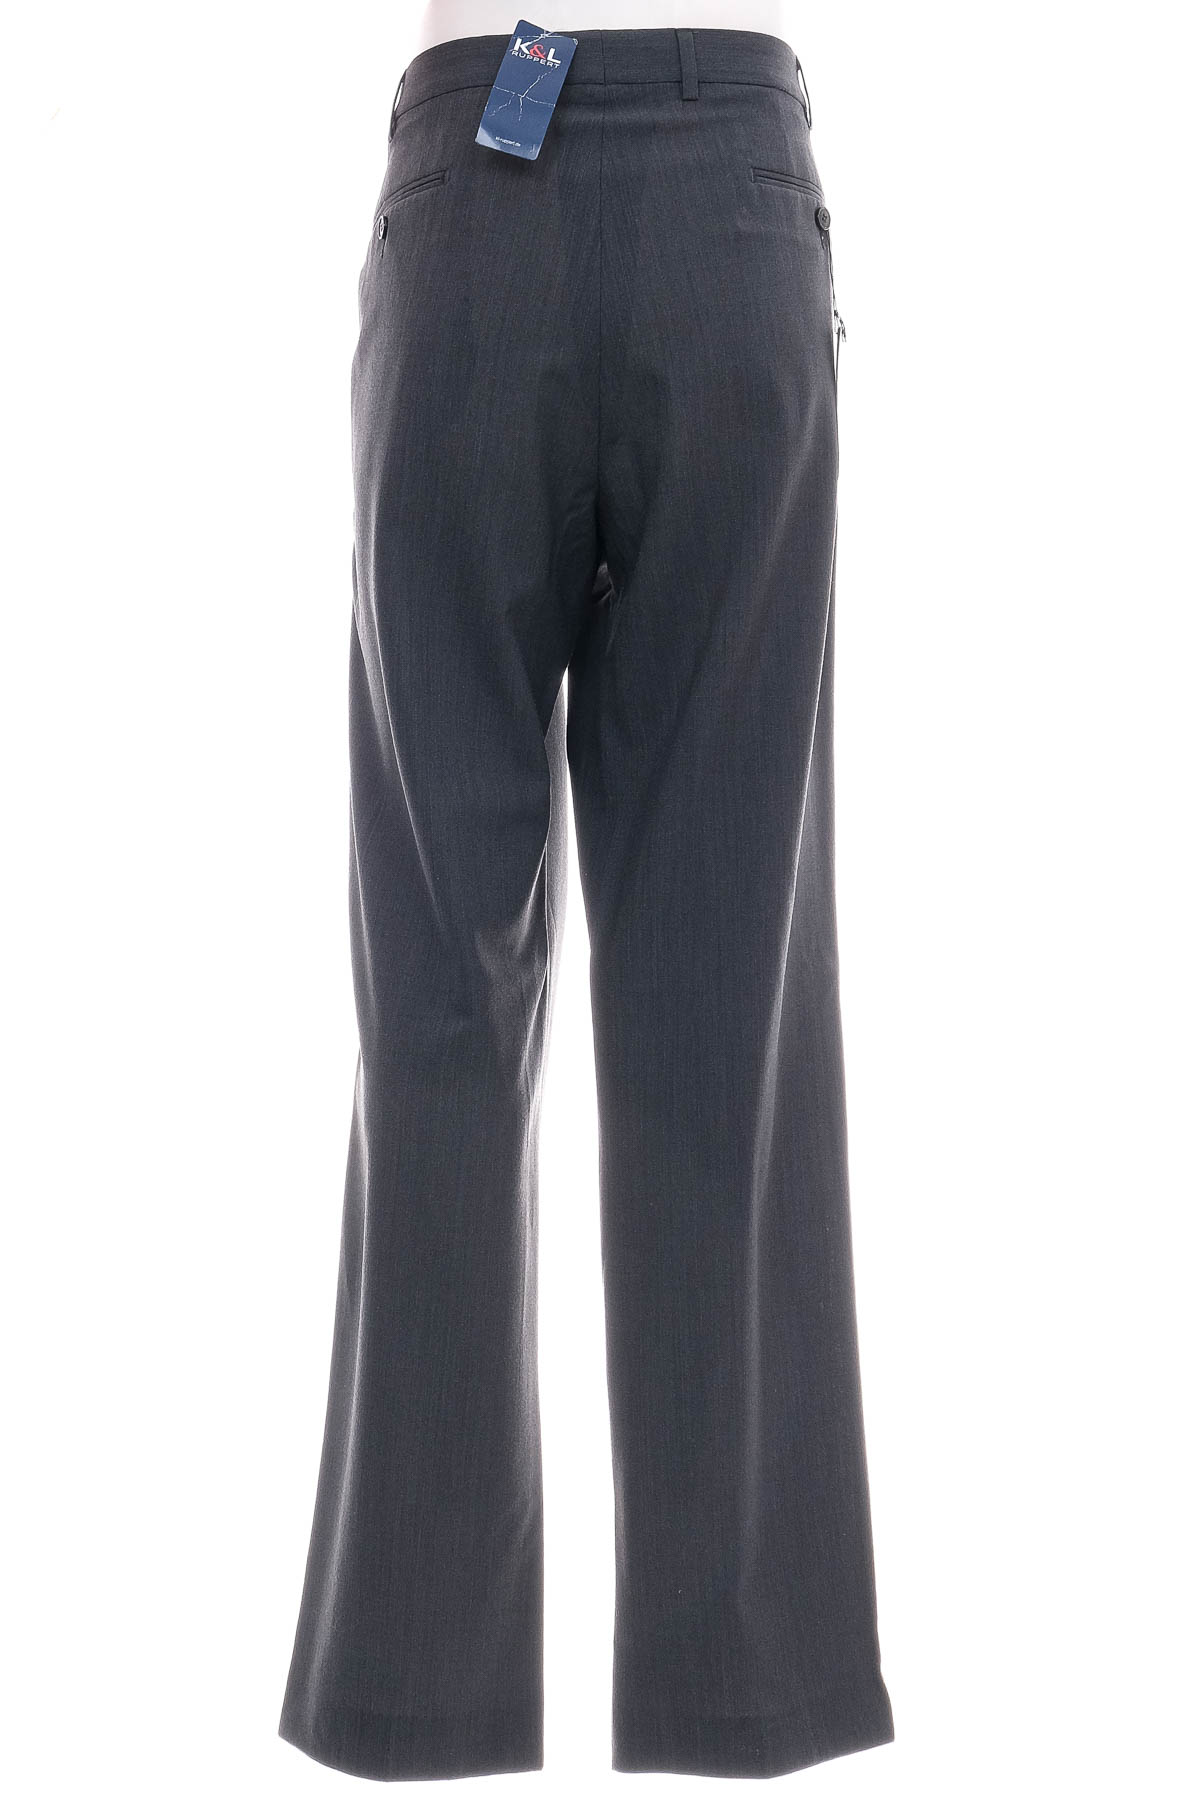 Men's trousers - K&L RUPPERT - 1